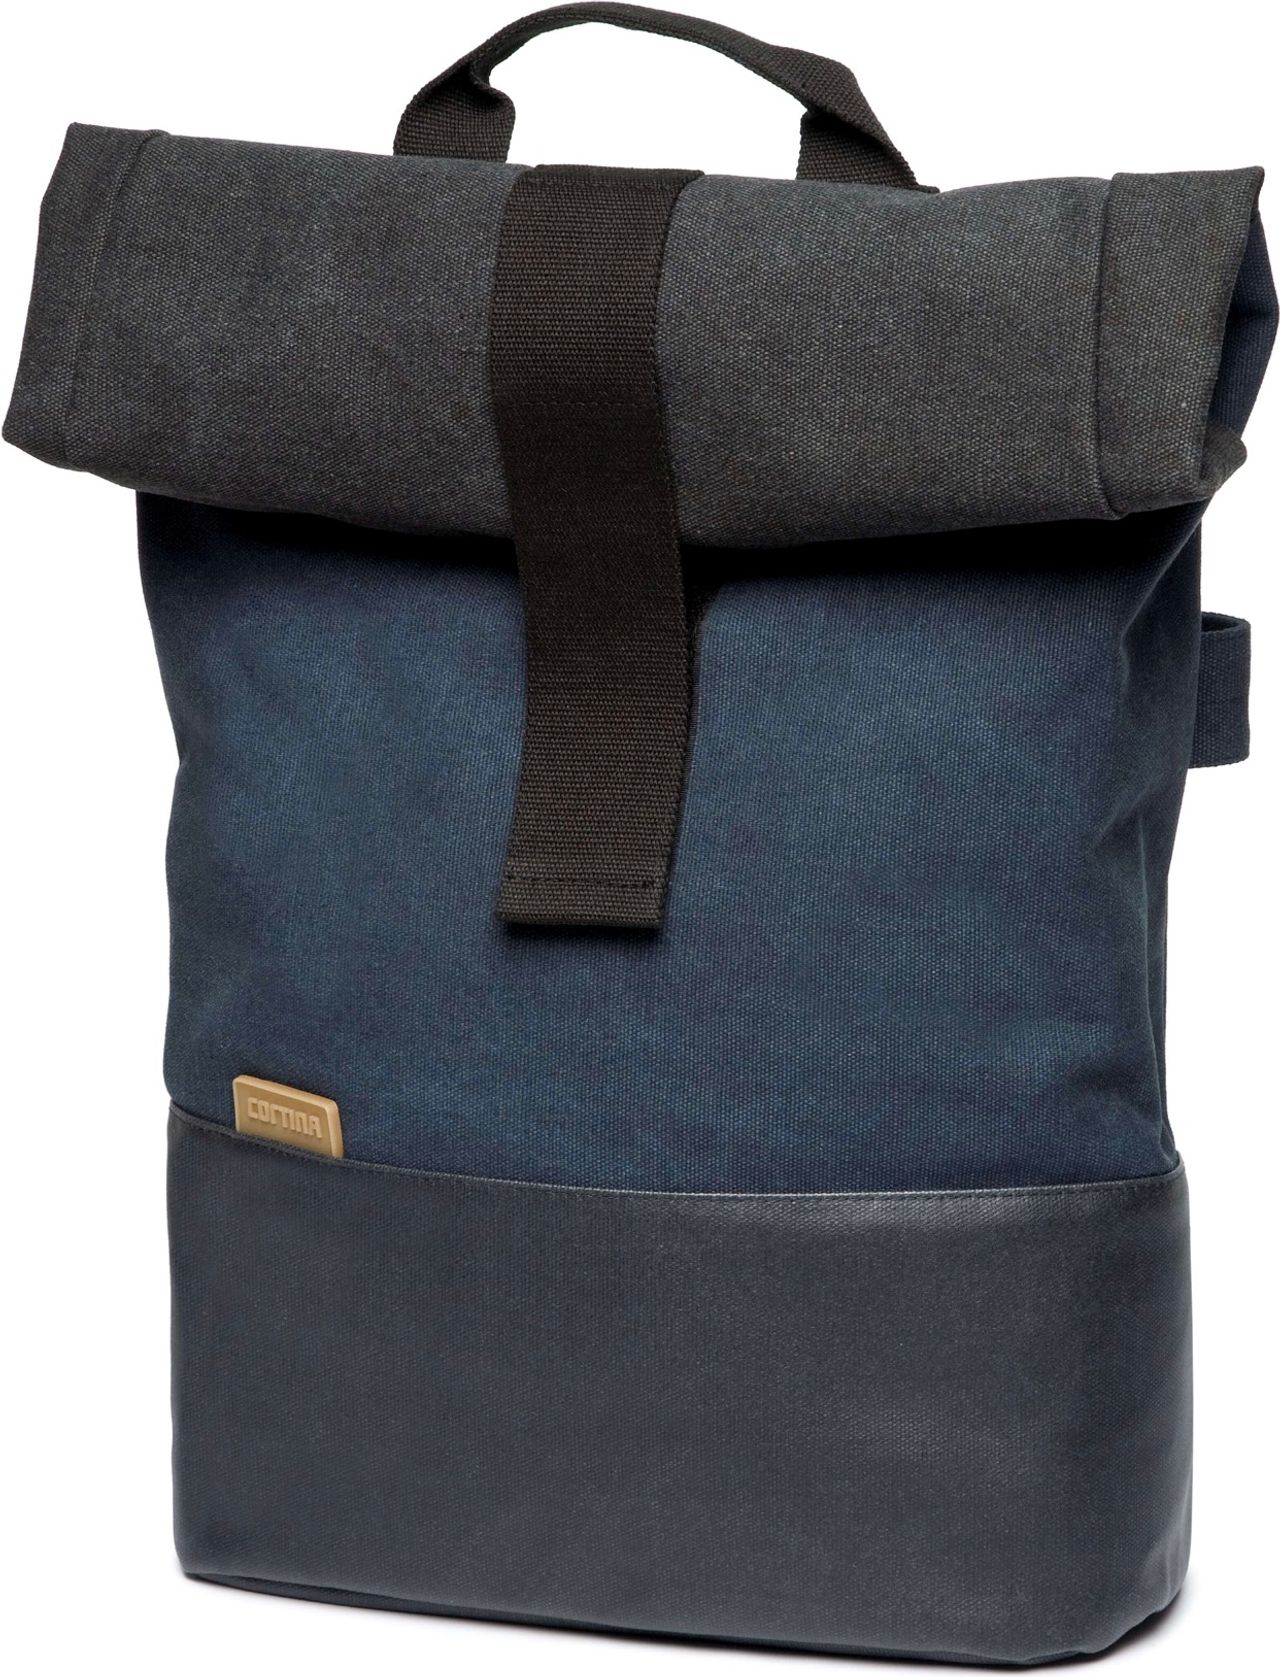 Cortina Denim Backpack - L